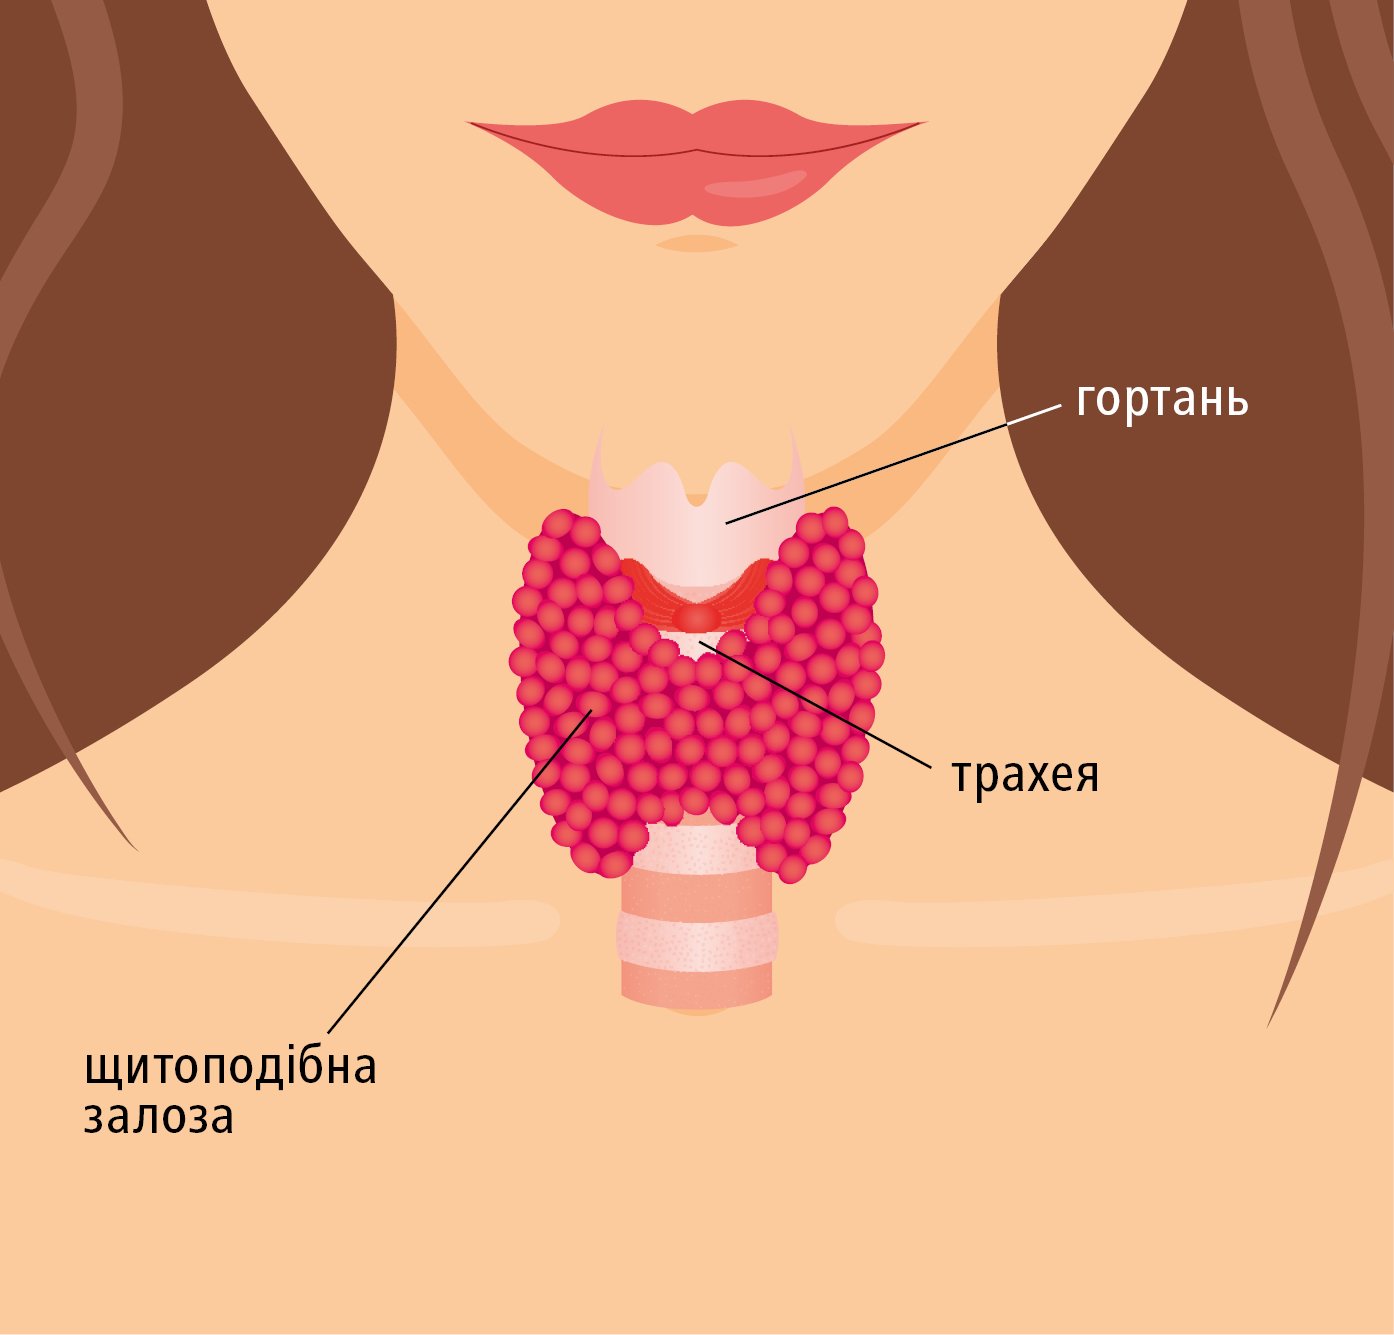 Щитоподібна залоза є малим органом, розміщеним біля основи шиї